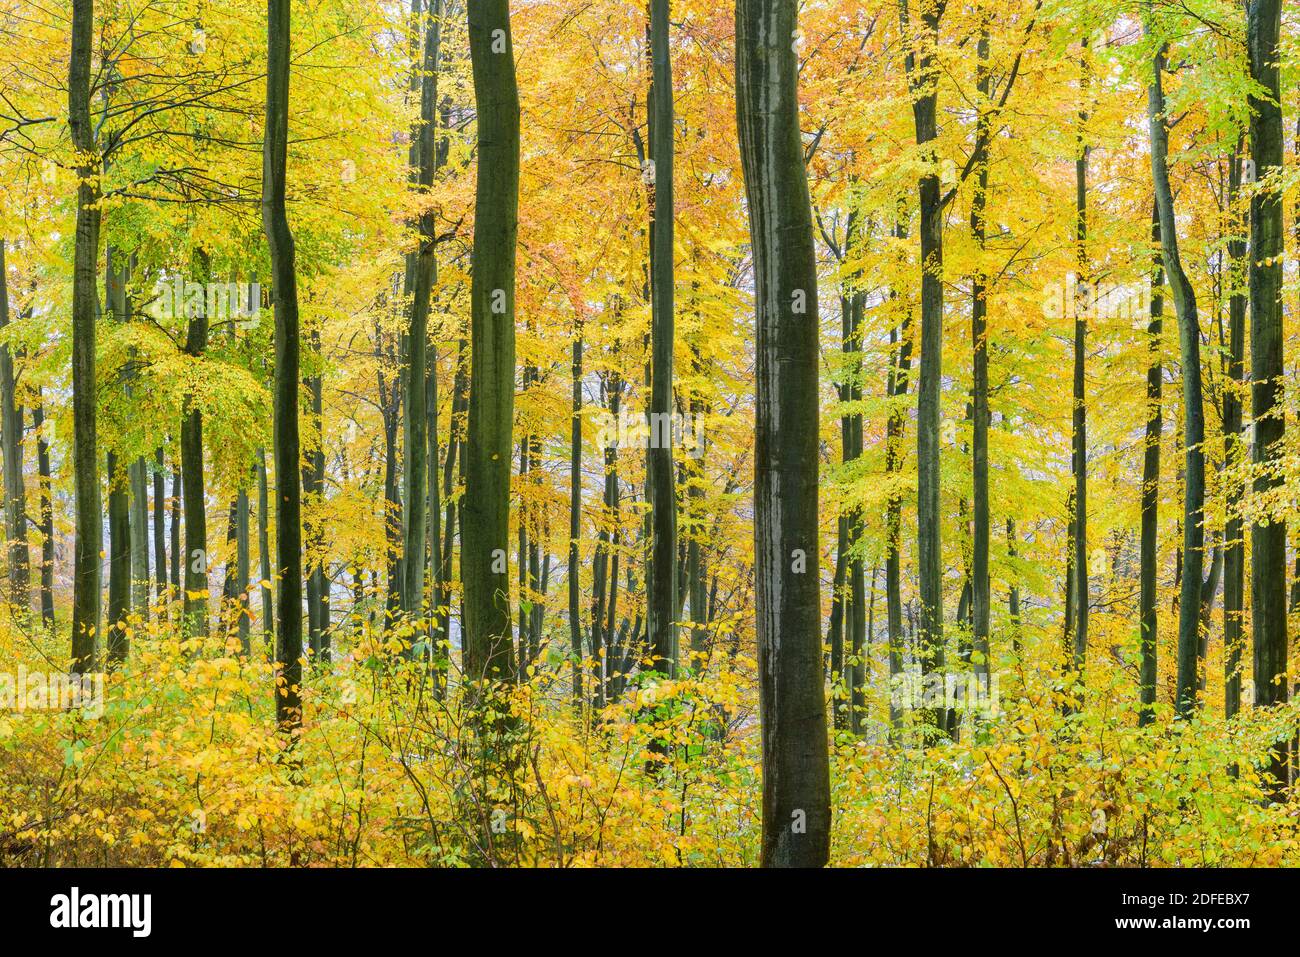 Herbstwald - Buchenwald, Jahreszeiten, Foto de stock